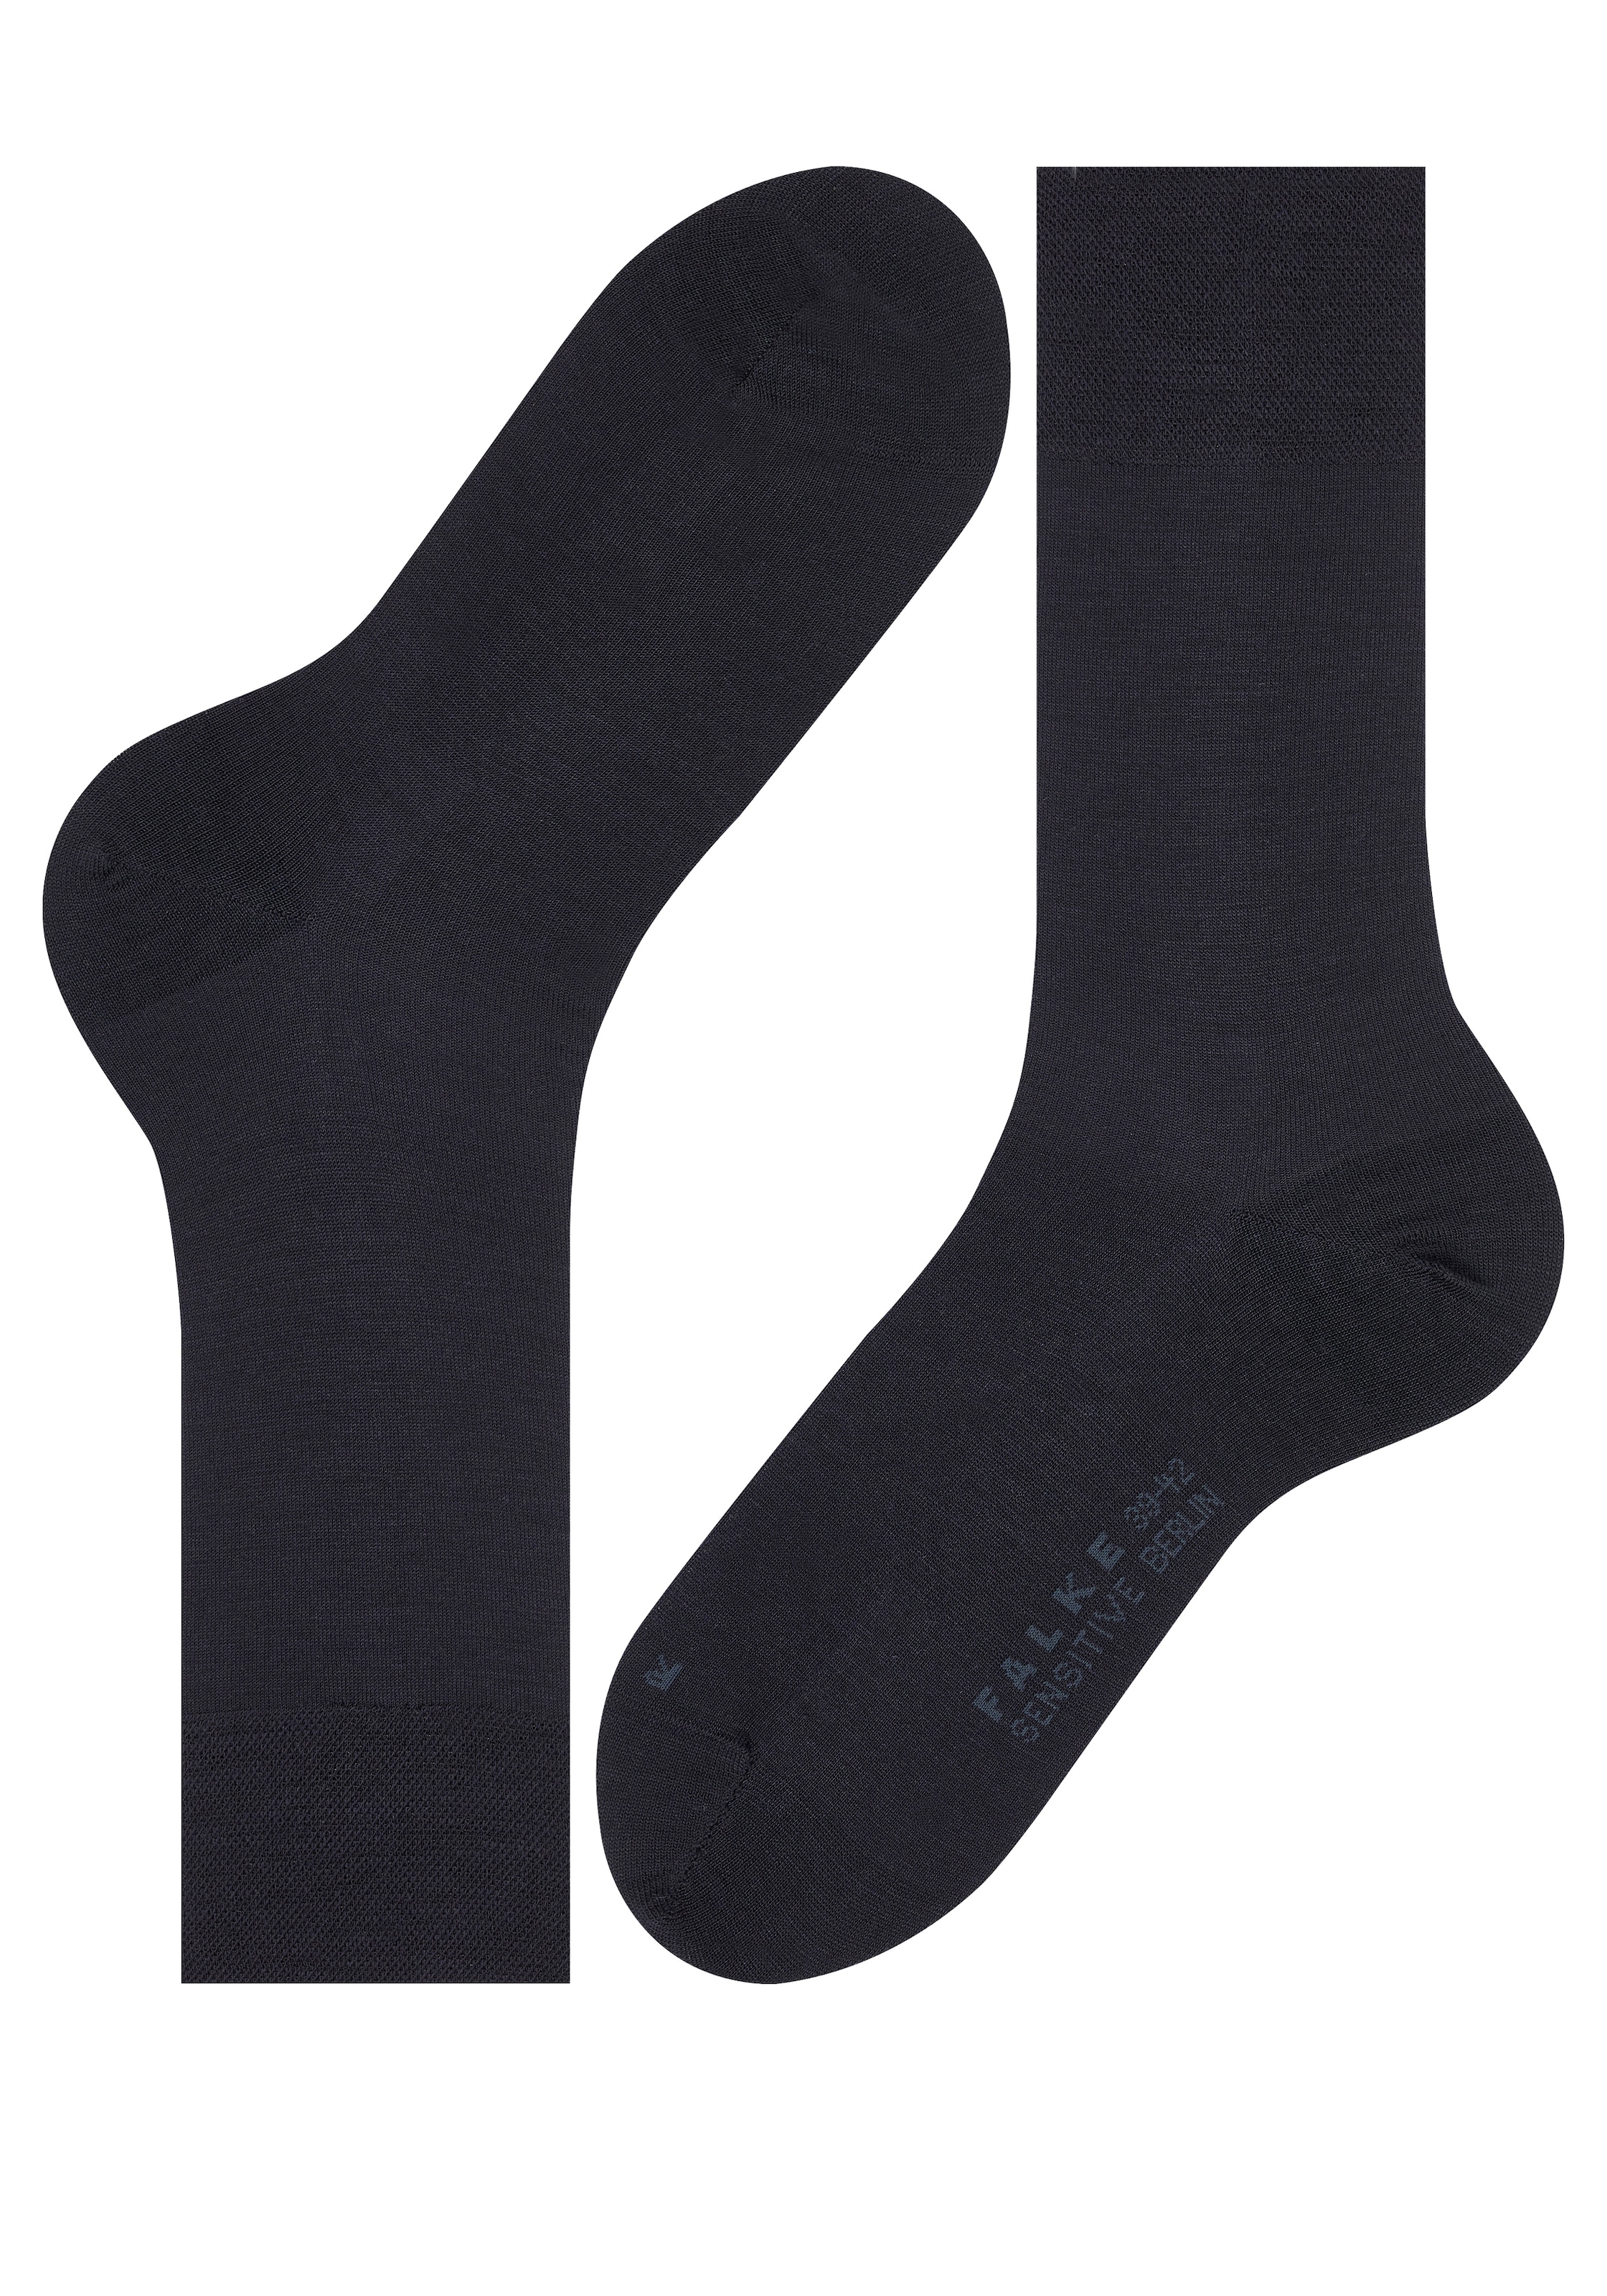 FALKE Socken 2 OTTO Gummi »Sensitive ohne Bündchen sensitve online Paar), kaufen bei Berlin«, (Packung, mit